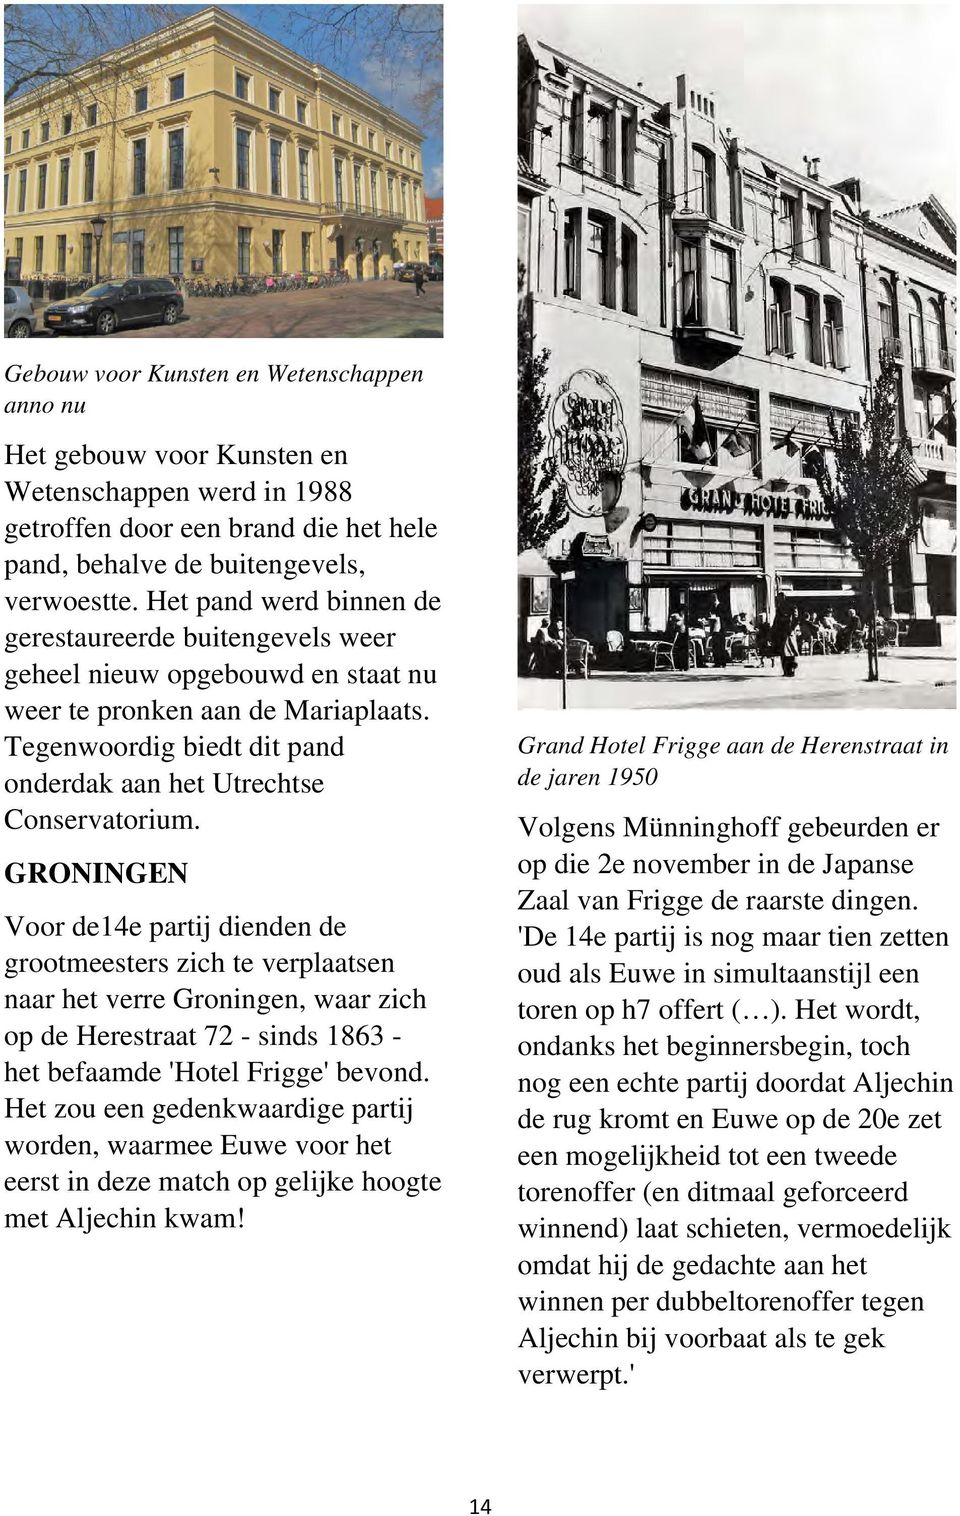 GRONINGEN Voor de14e partij dienden de grootmeesters zich te verplaatsen naar het verre Groningen, waar zich op de Herestraat 72 - sinds 1863 - het befaamde 'Hotel Frigge' bevond.